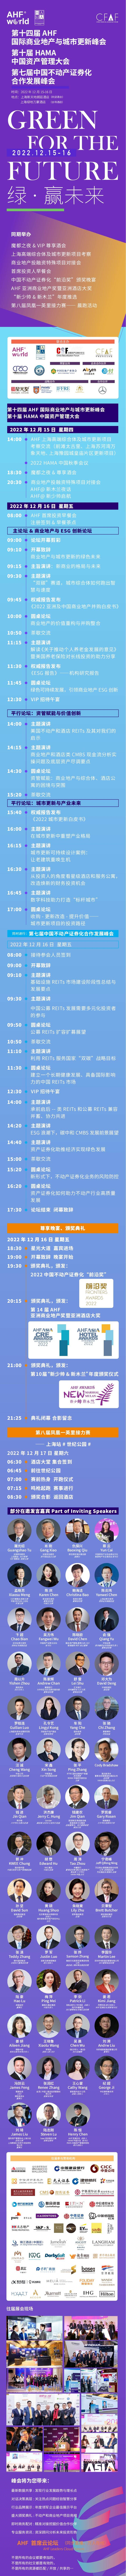 第十四届AHF国际商业地产与城市更新峰会(5)_00_副本.png